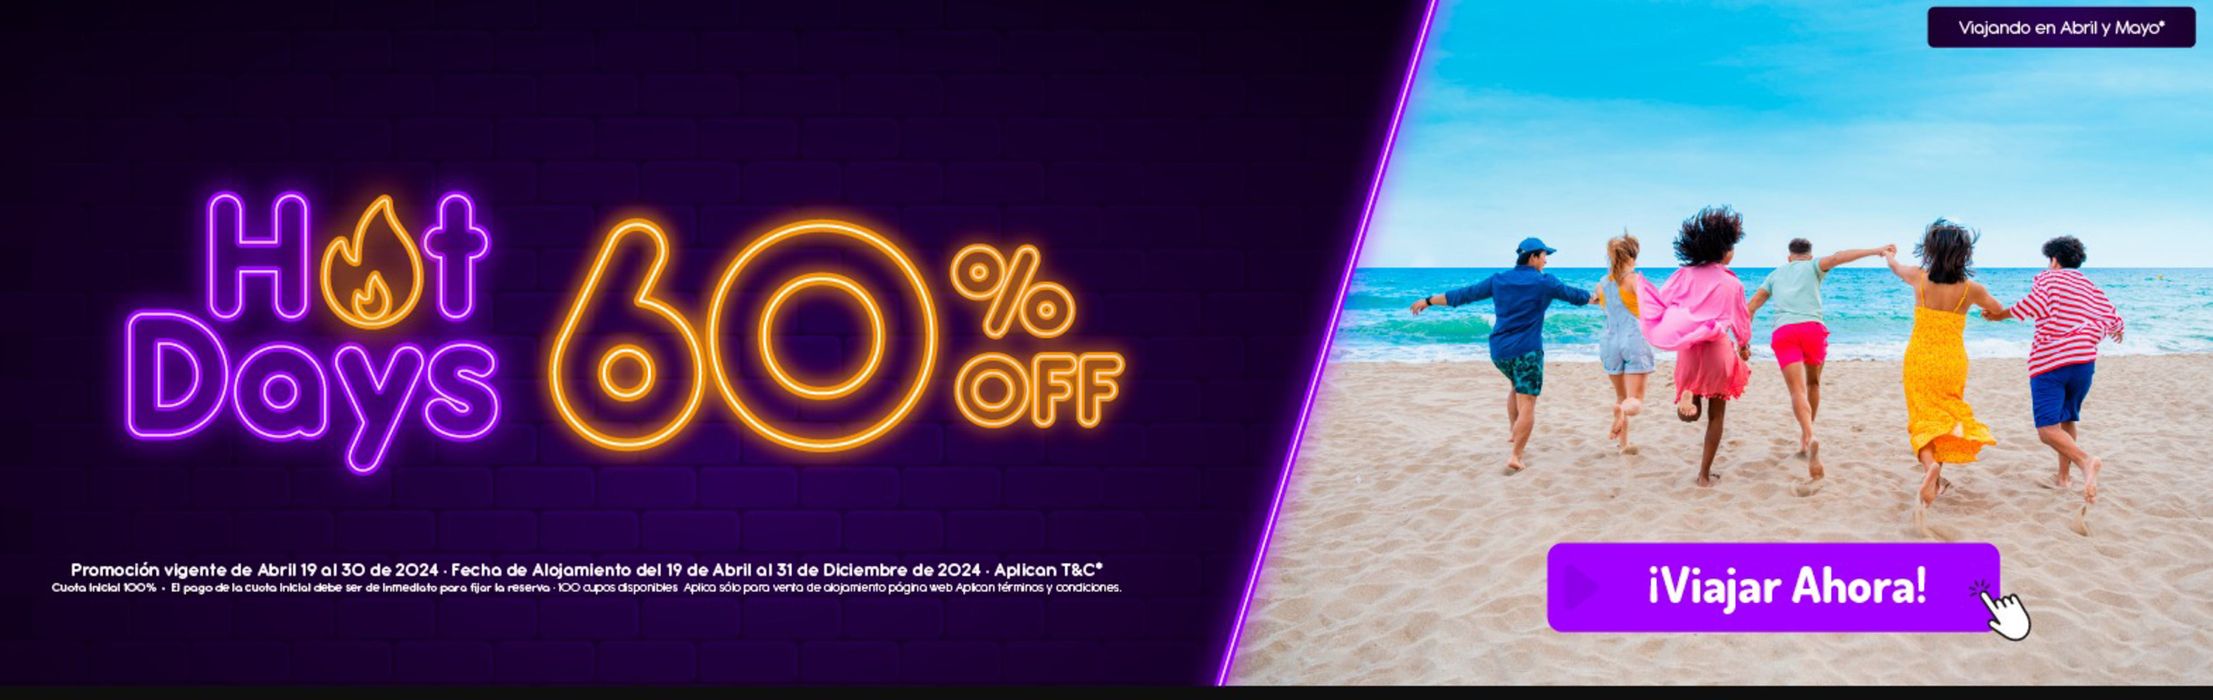 Catálogo On Vacation en Montería | Hot days 60% off | 30/4/2024 - 31/12/2024